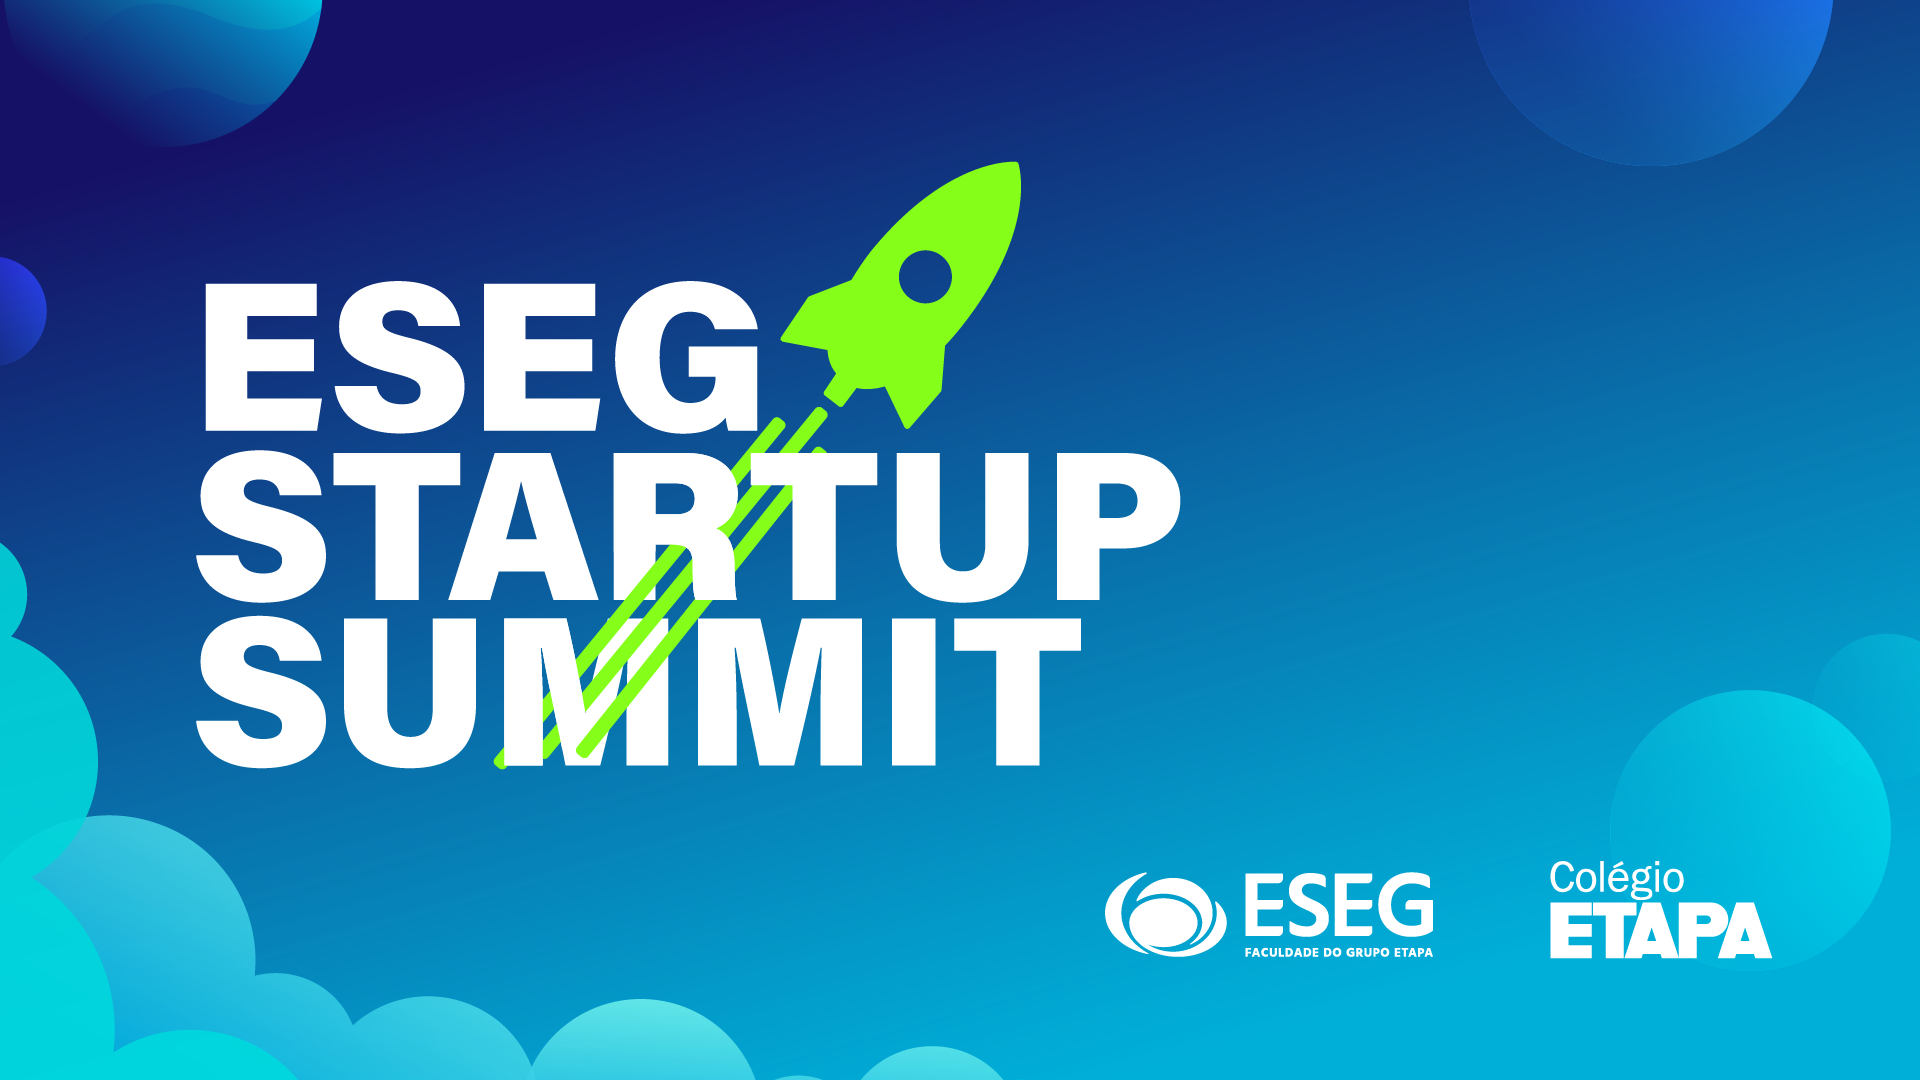 Durante o ESEG Startup Summit 2022, quatro grupos de alunos do Colégio Etapa apresentaram suas startups.